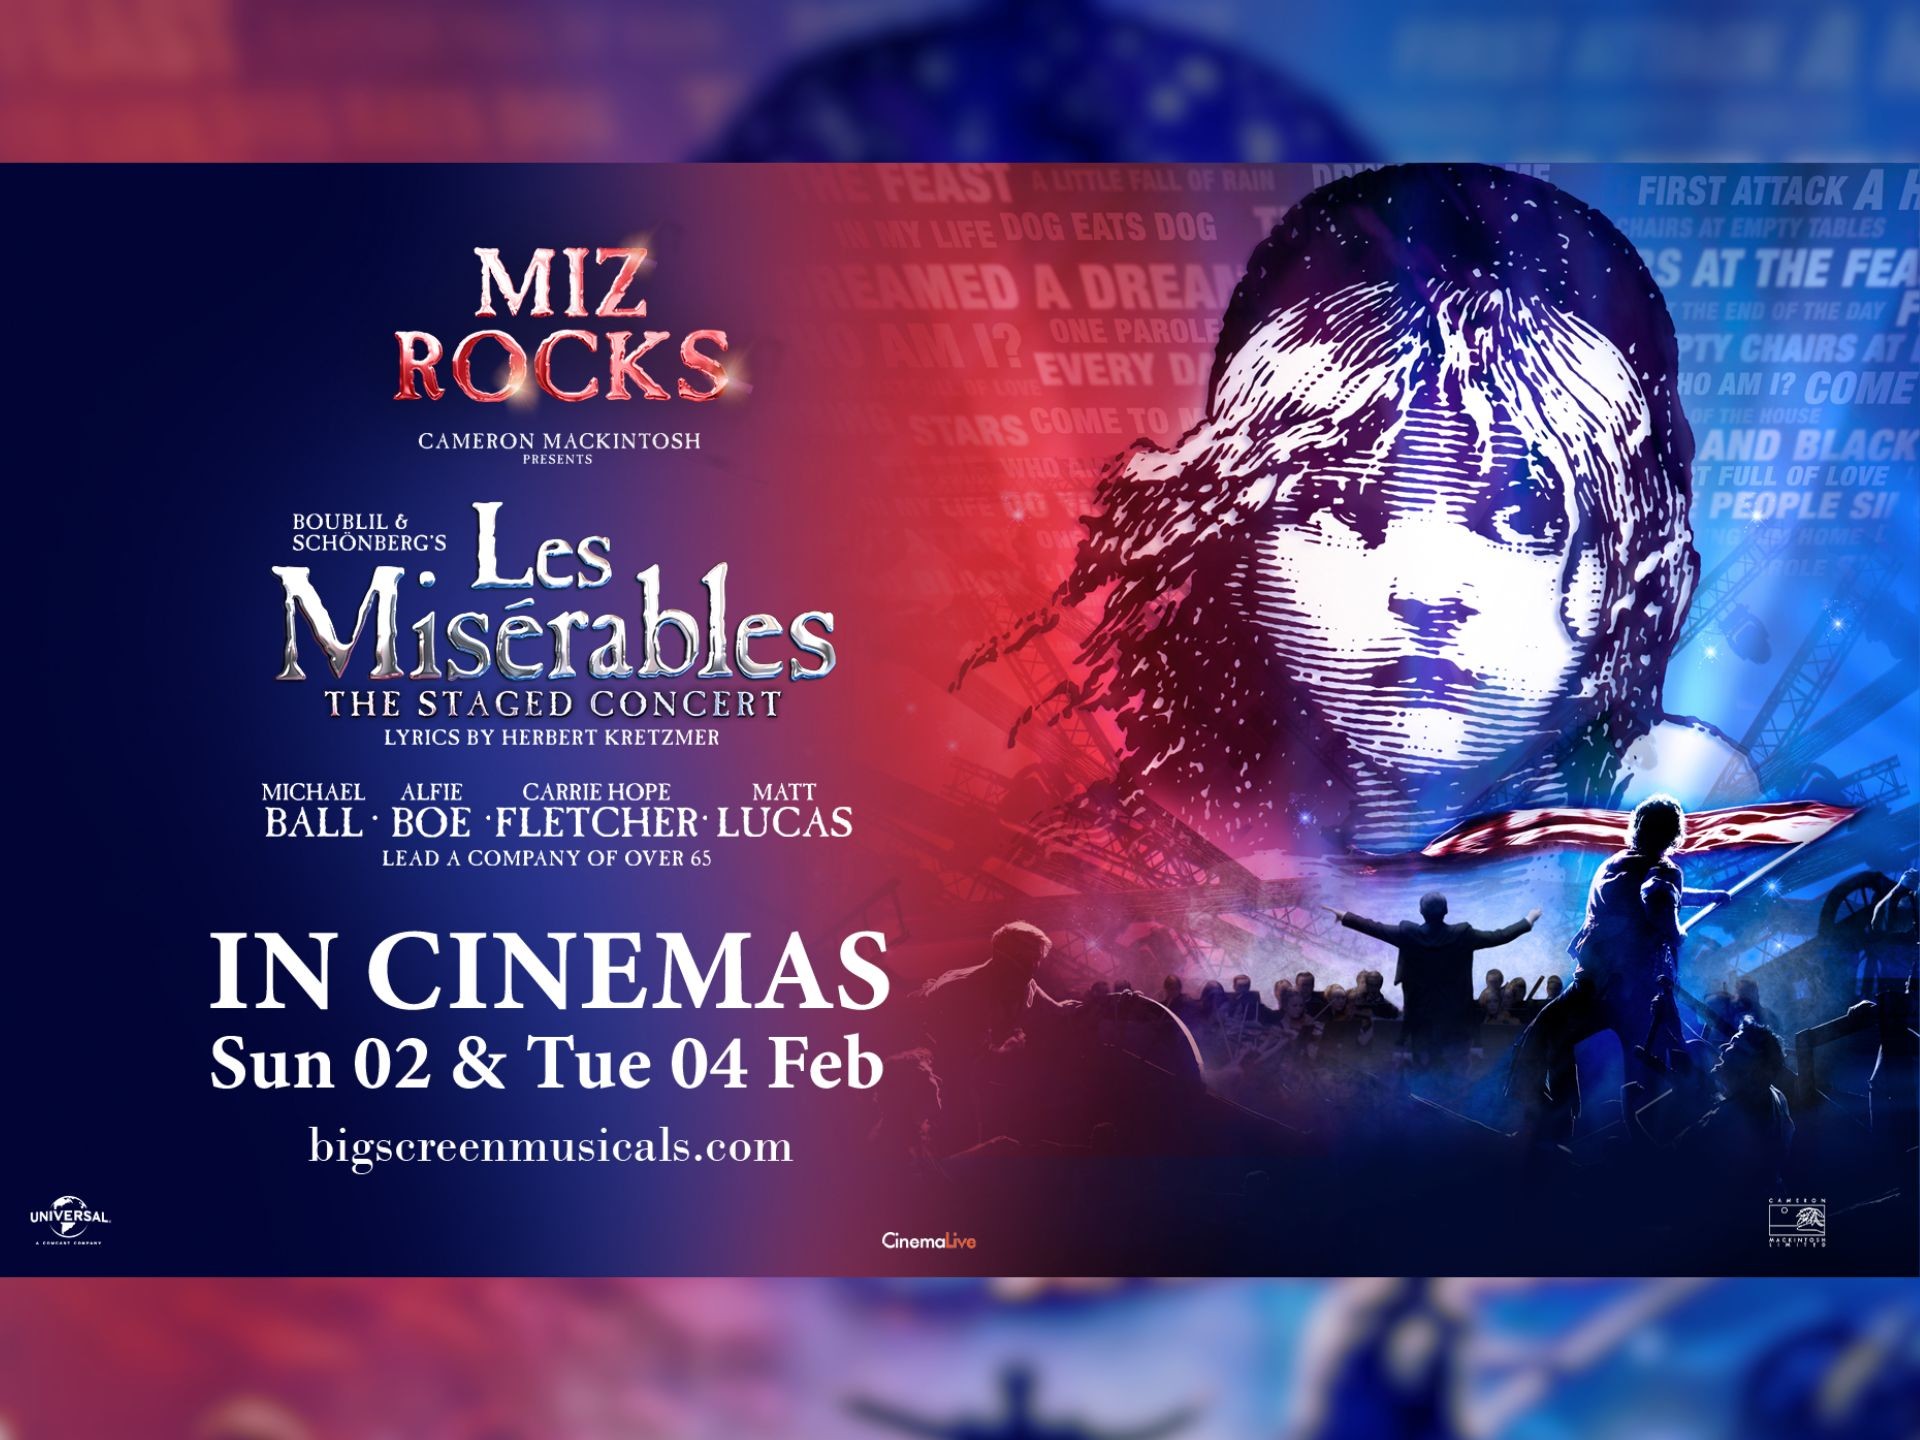 Les Misérables - The Staged Concert (40th Anniversary celebration)